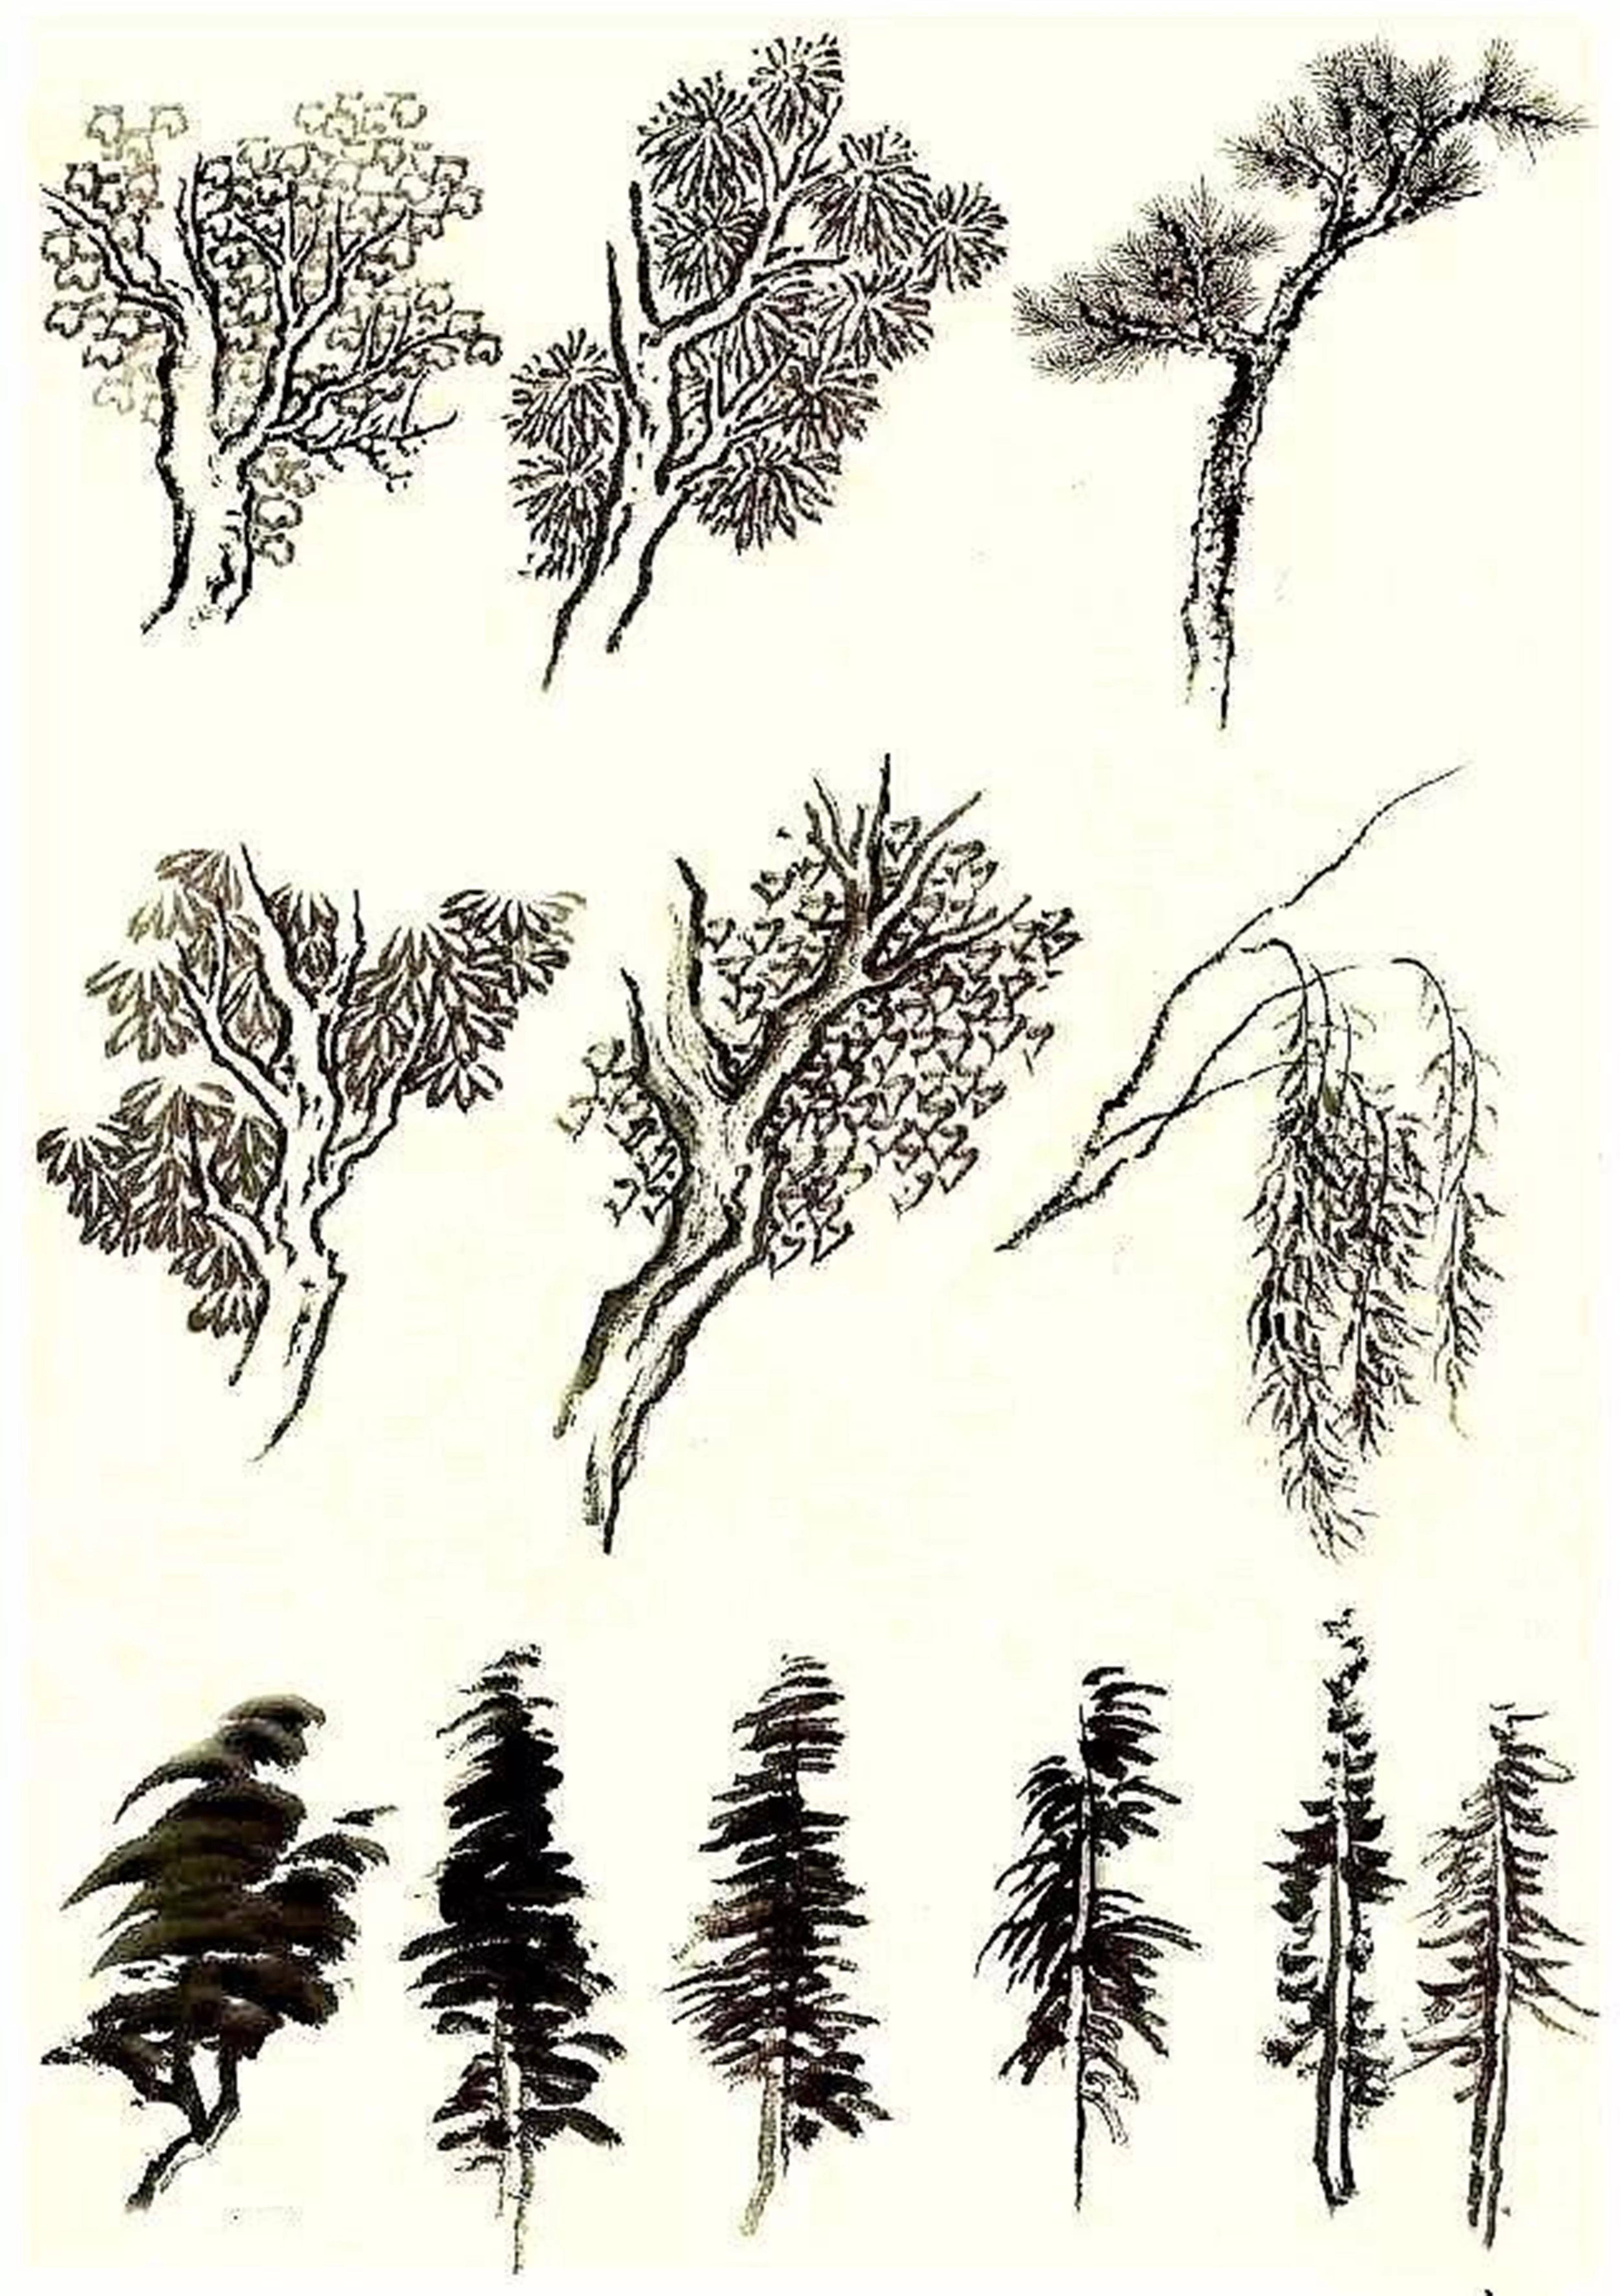 曾锐教授:国画学习系列(五)4"山水国画"之 树的画法"